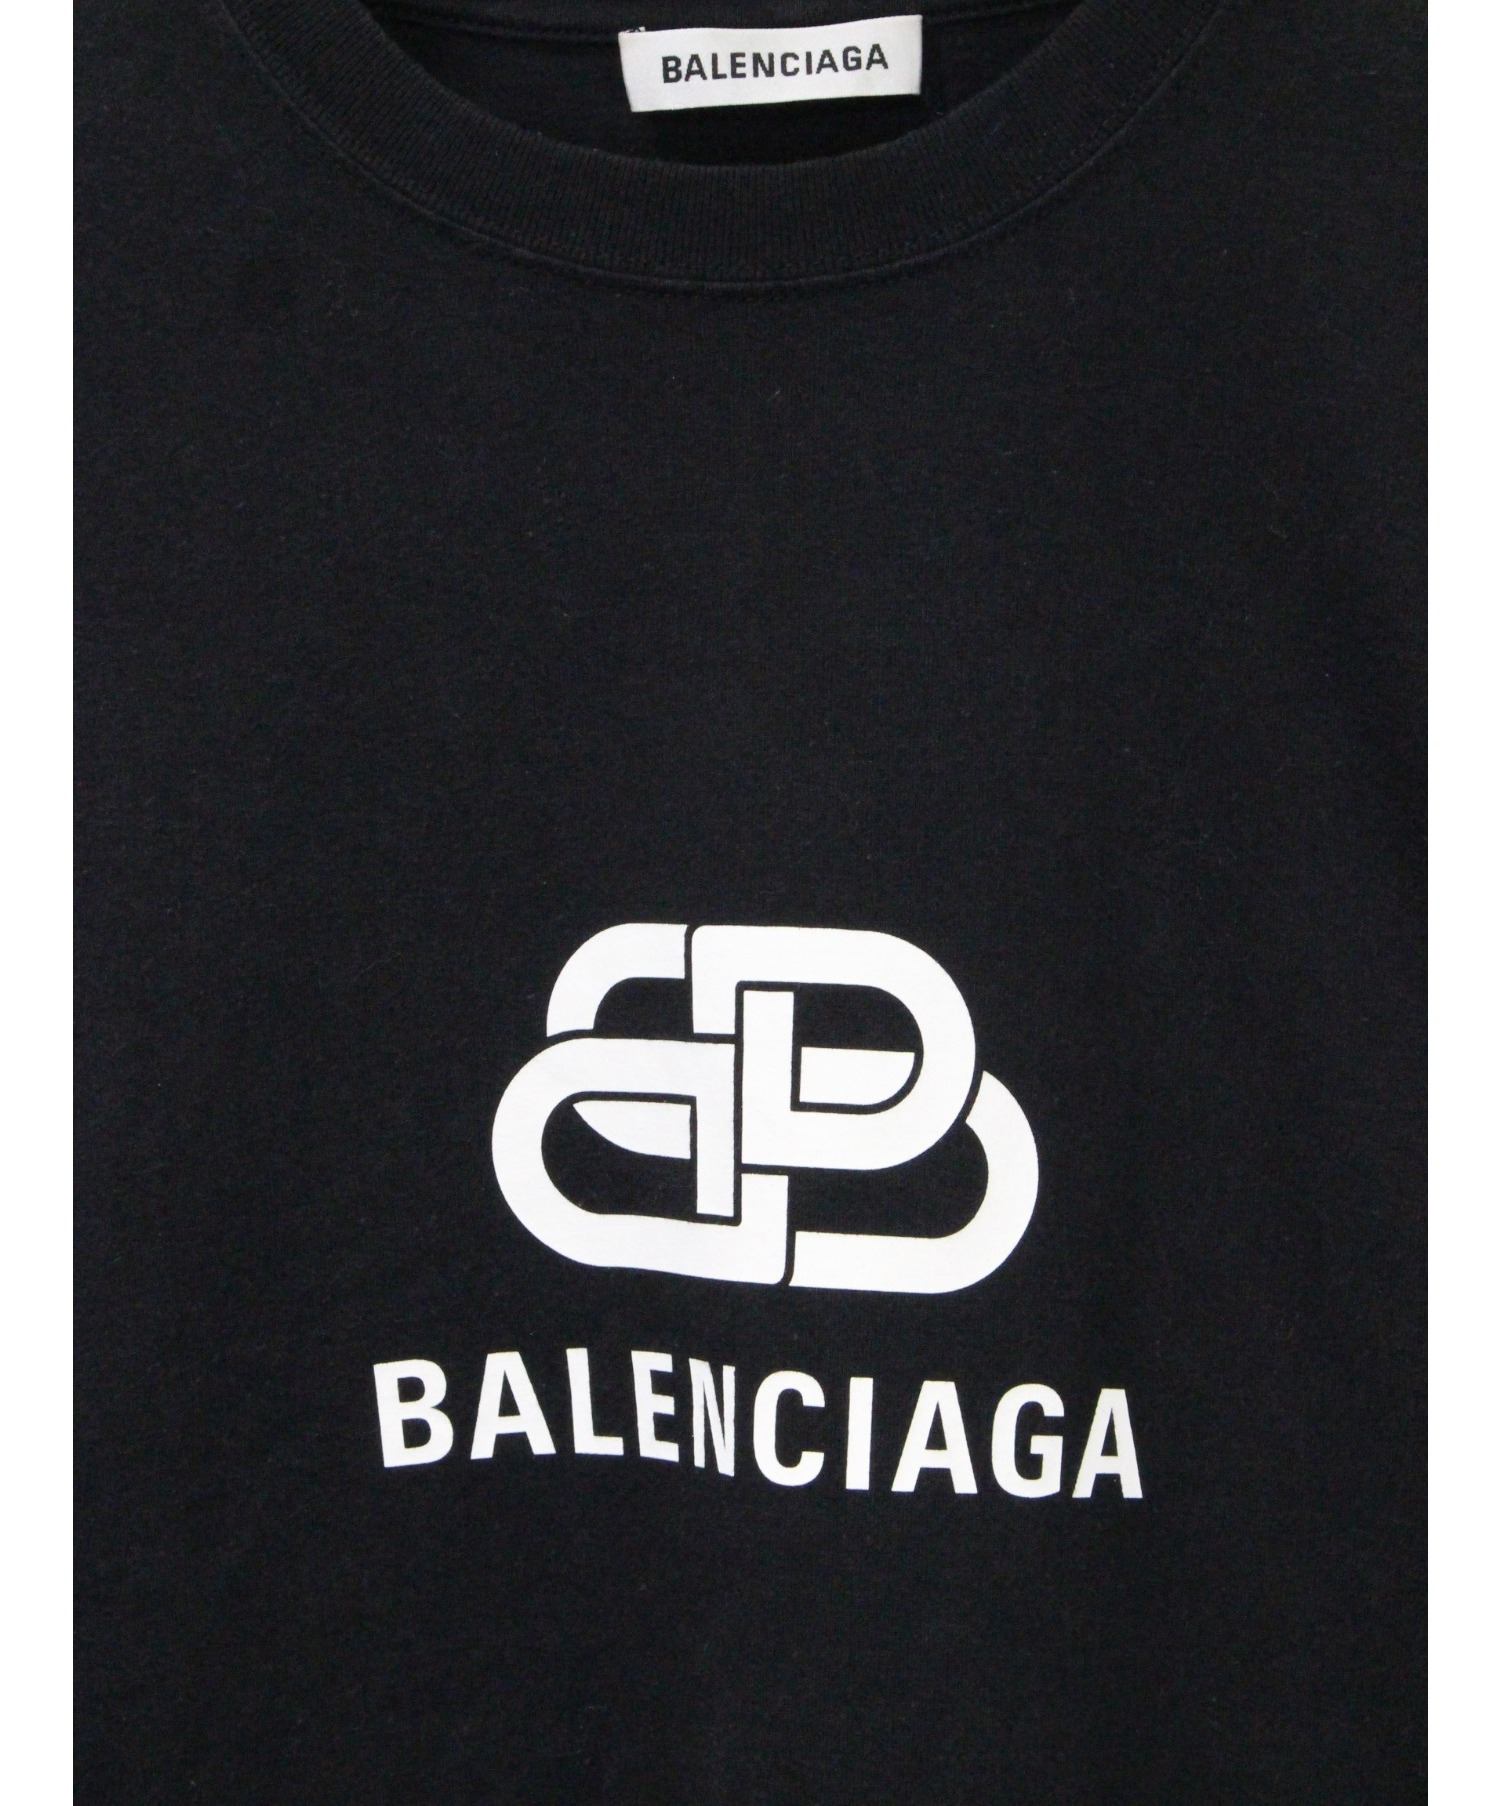 超目玉 BALENCIAGA バレンシアガ Tシャツ 総ロゴ ブラック オーバーサイズ